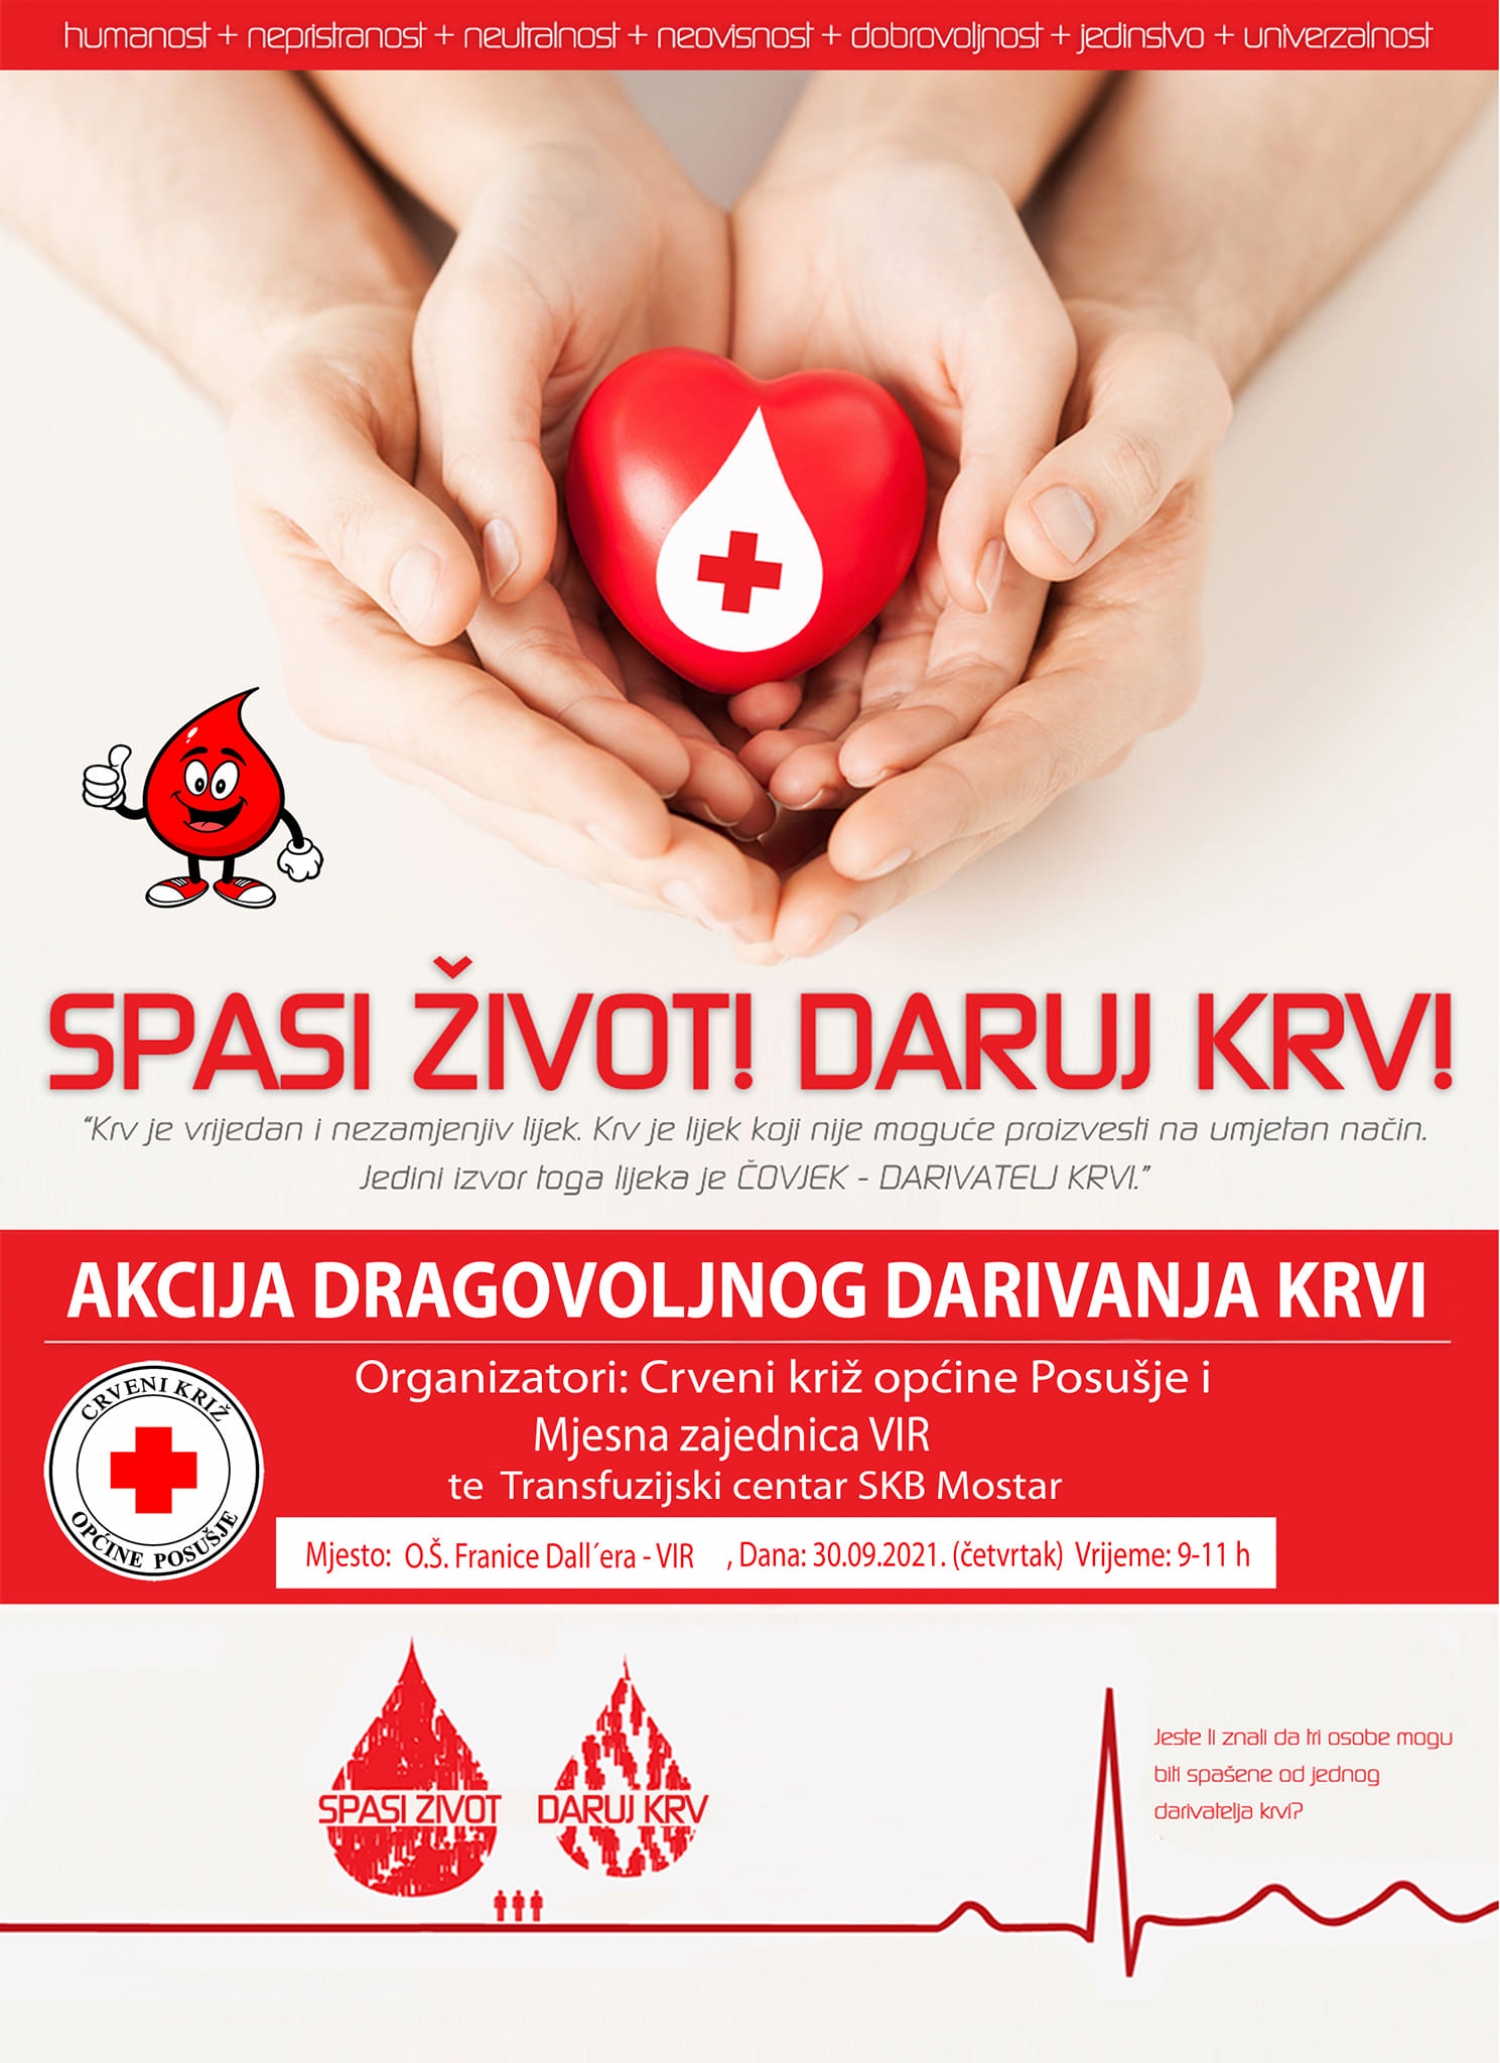 CK Posušje: Dvije akcije dobrovoljnog darivanja krvi u dva dana!